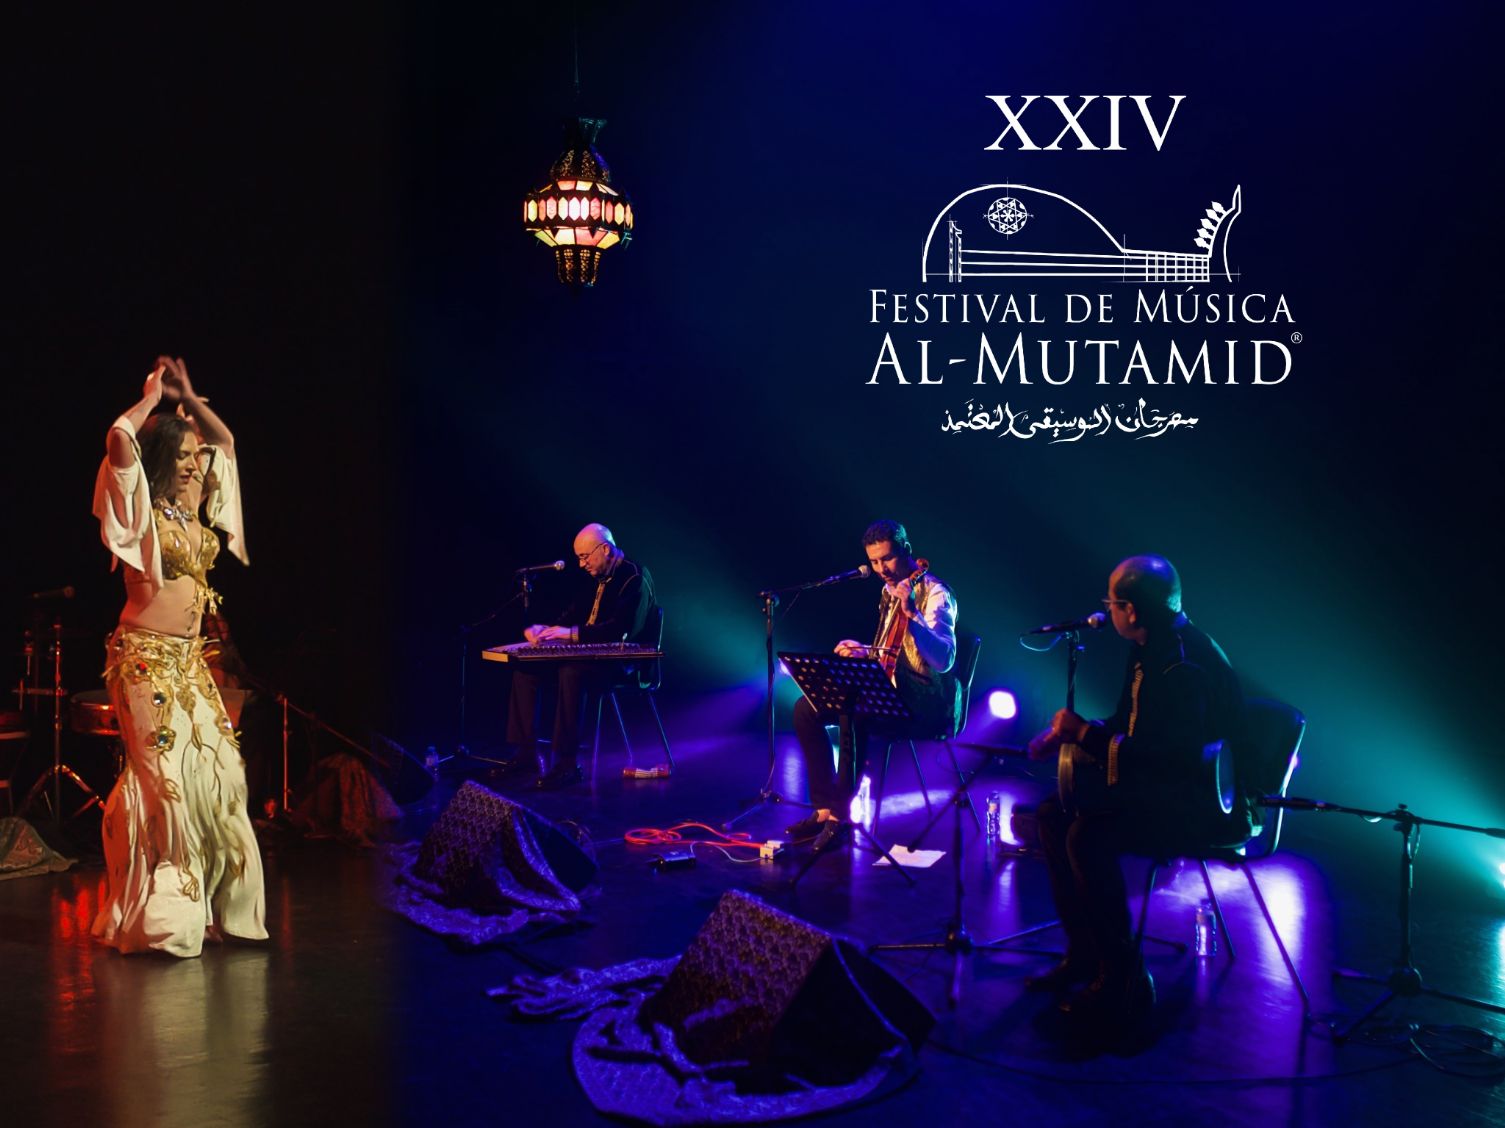 24º Festival de Música Al-Mutamid